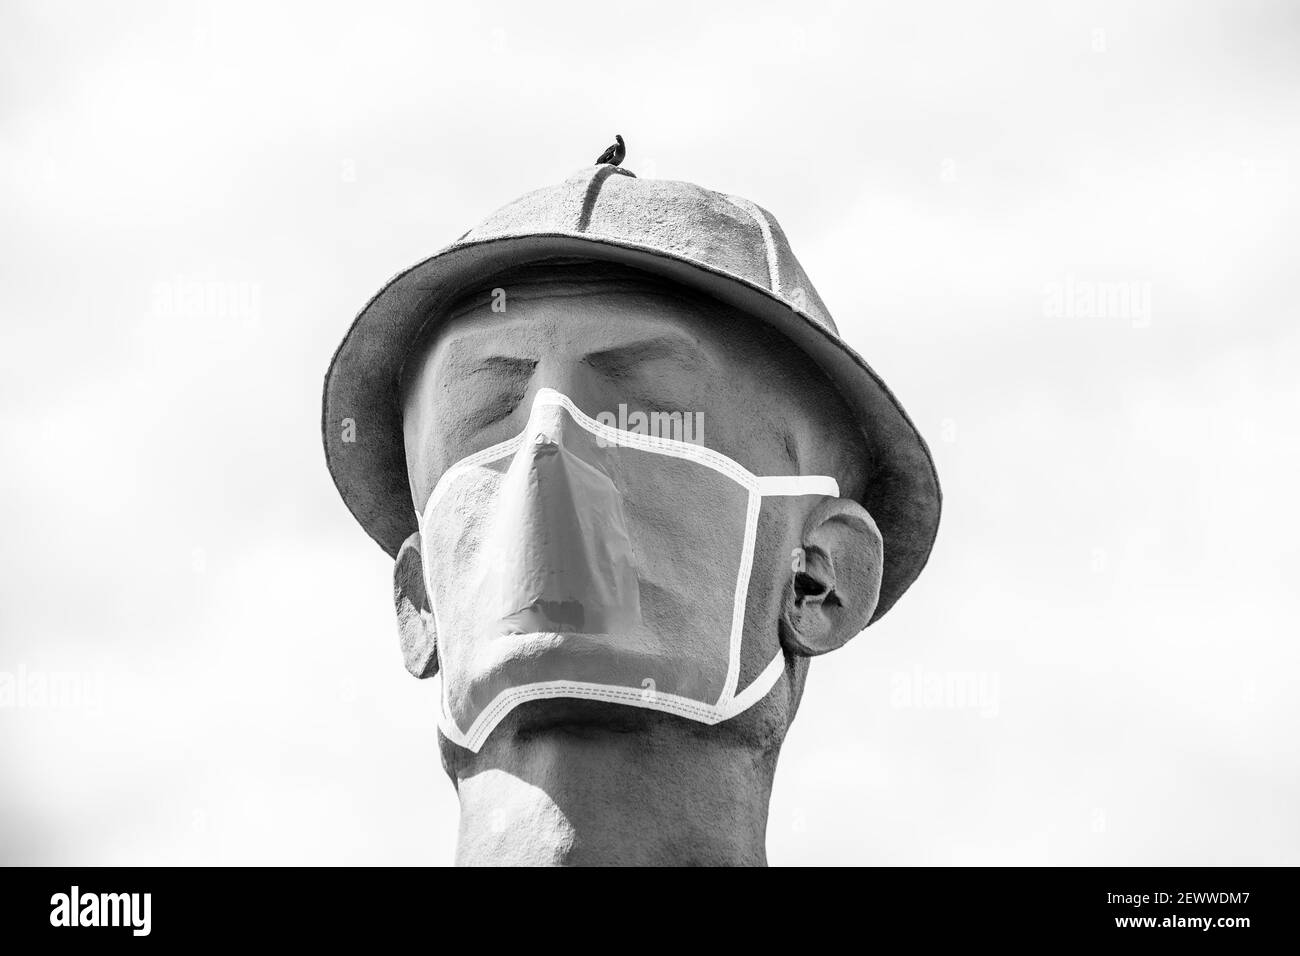 07 09 2020 Tulsa, États-Unis Iconic Golden Diller - immense statue d'ouvrier de champs pétrolifères près de la route 66 en Oklahoma portant un masque facial pendant une pandémie - gros plan Banque D'Images